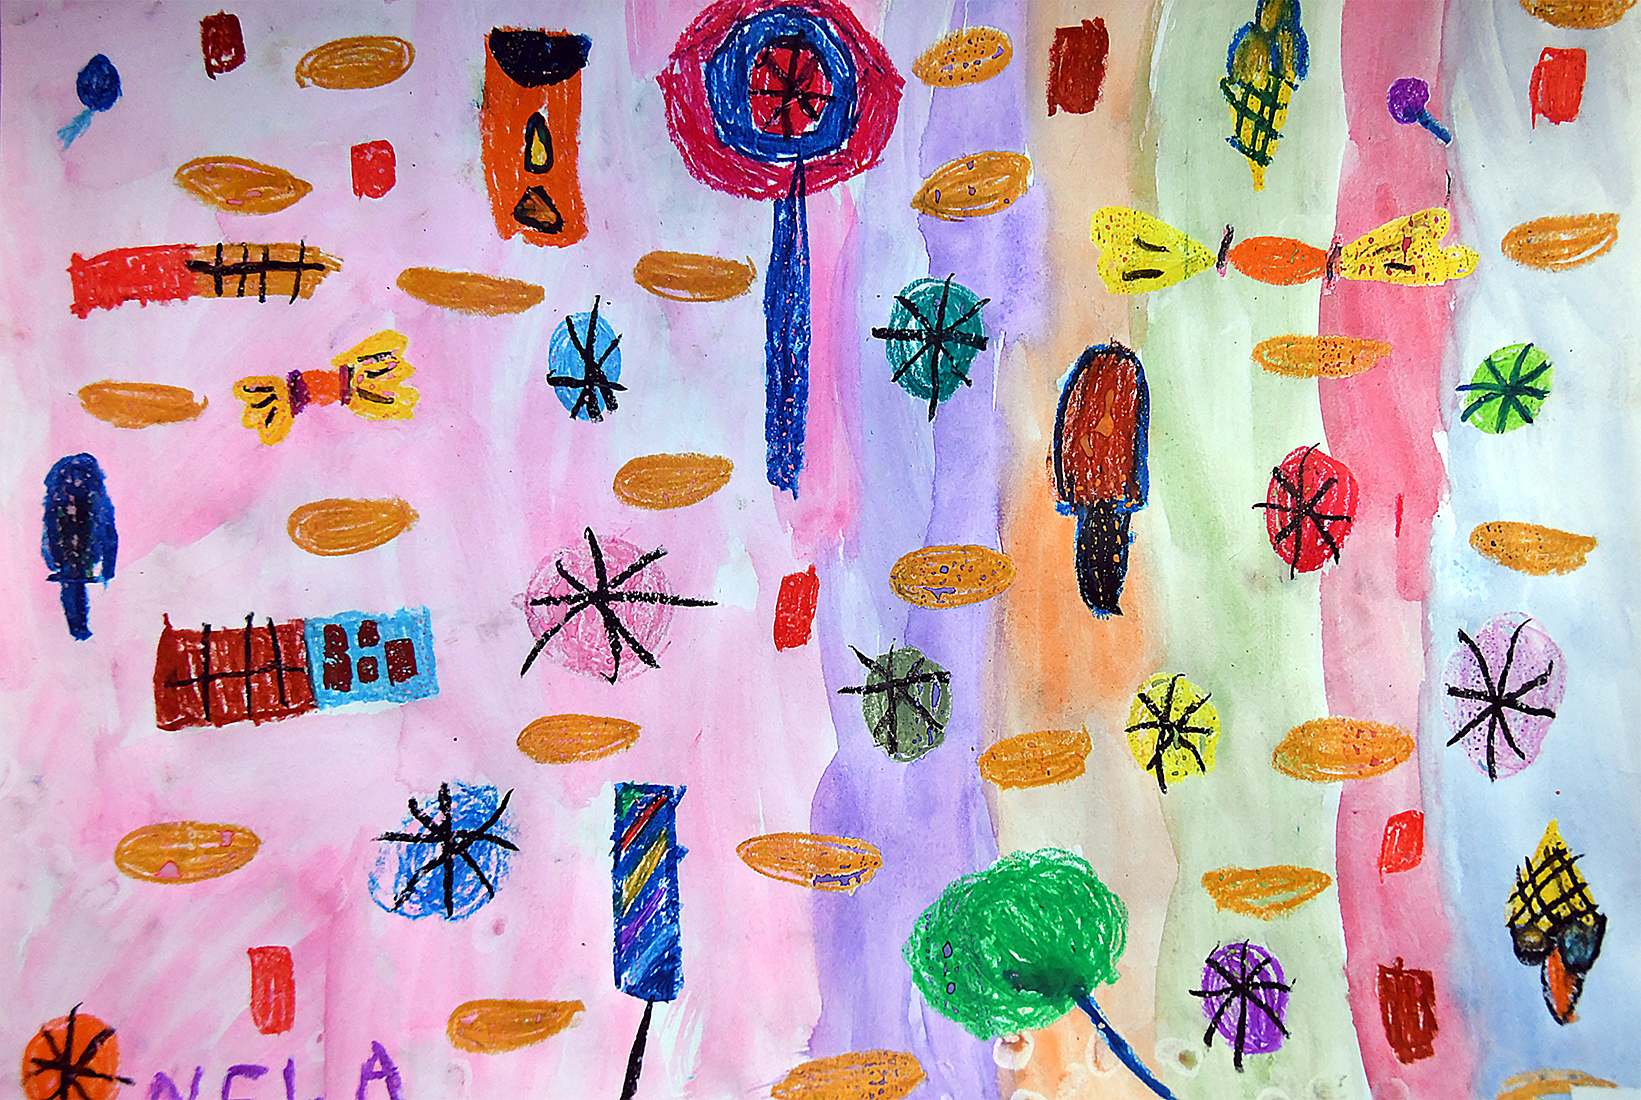 rysunek dziecka. na kolorowym tle wiele małych kolorowych elementów- drzew, lodów, kółek, ważek